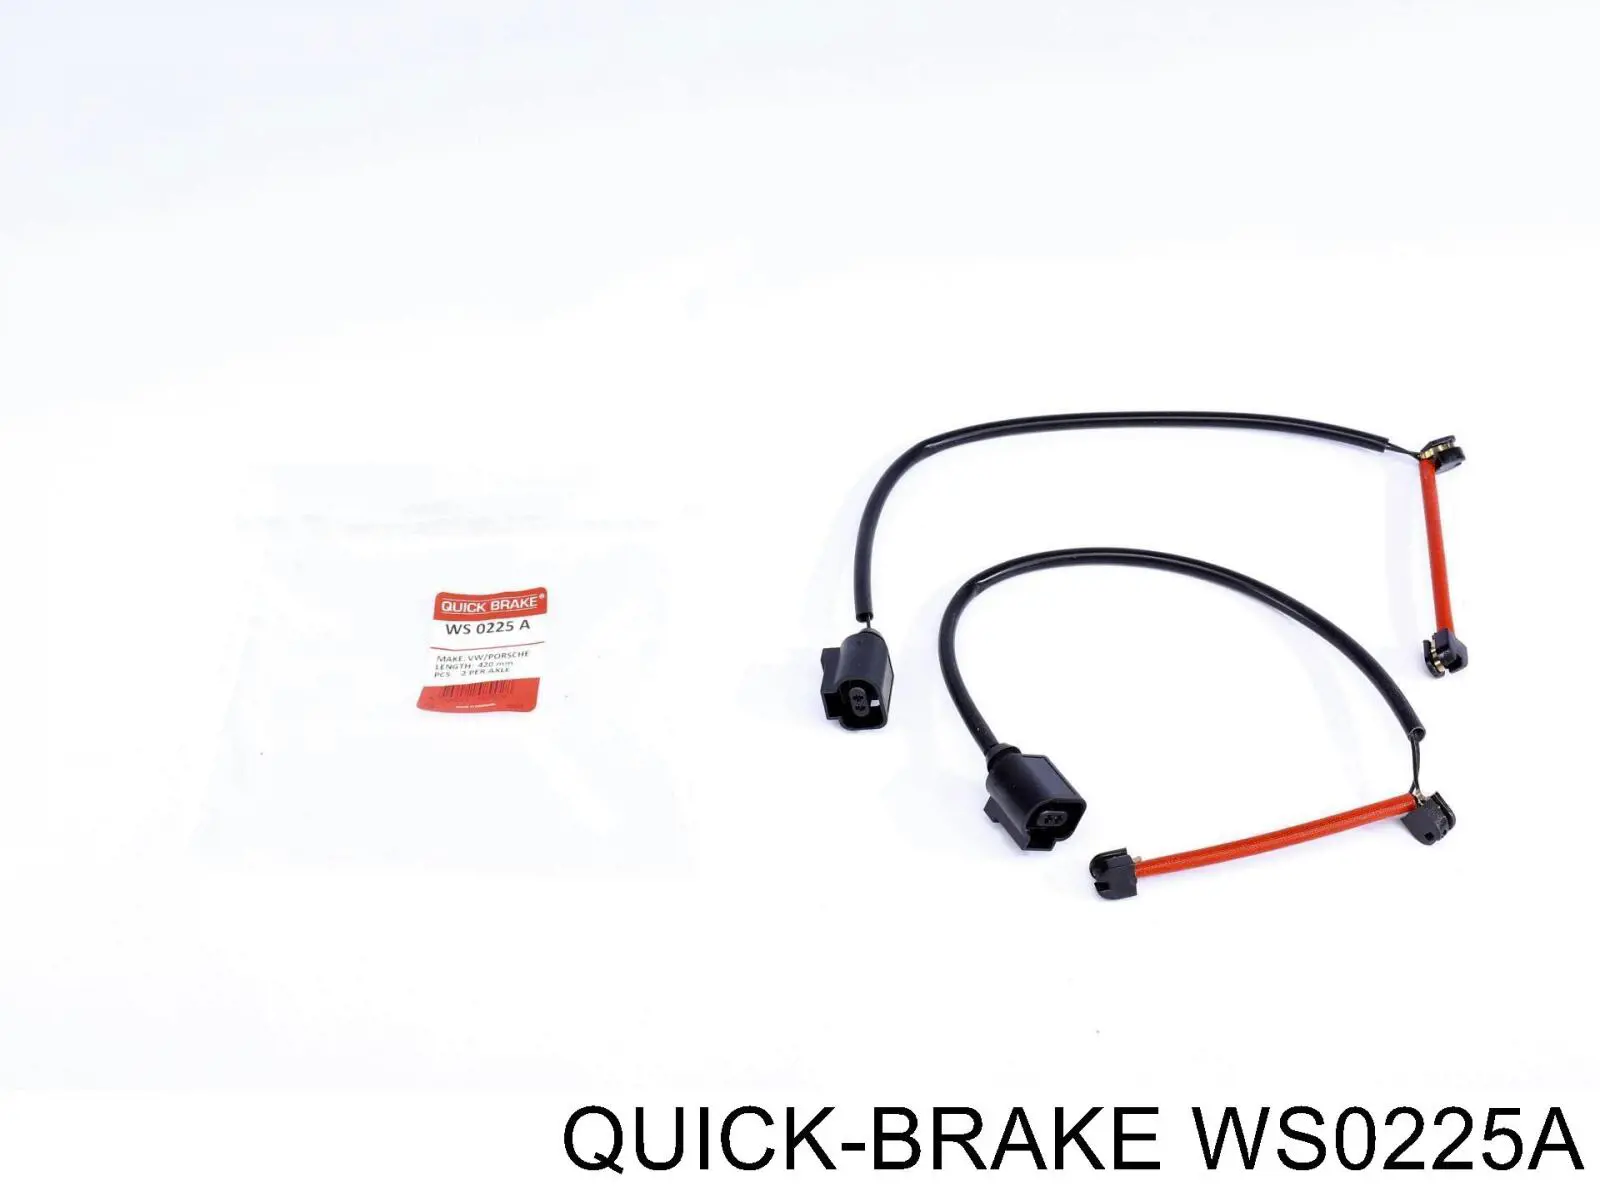 WS 0225 A Quick Brake contacto de aviso, desgaste de los frenos